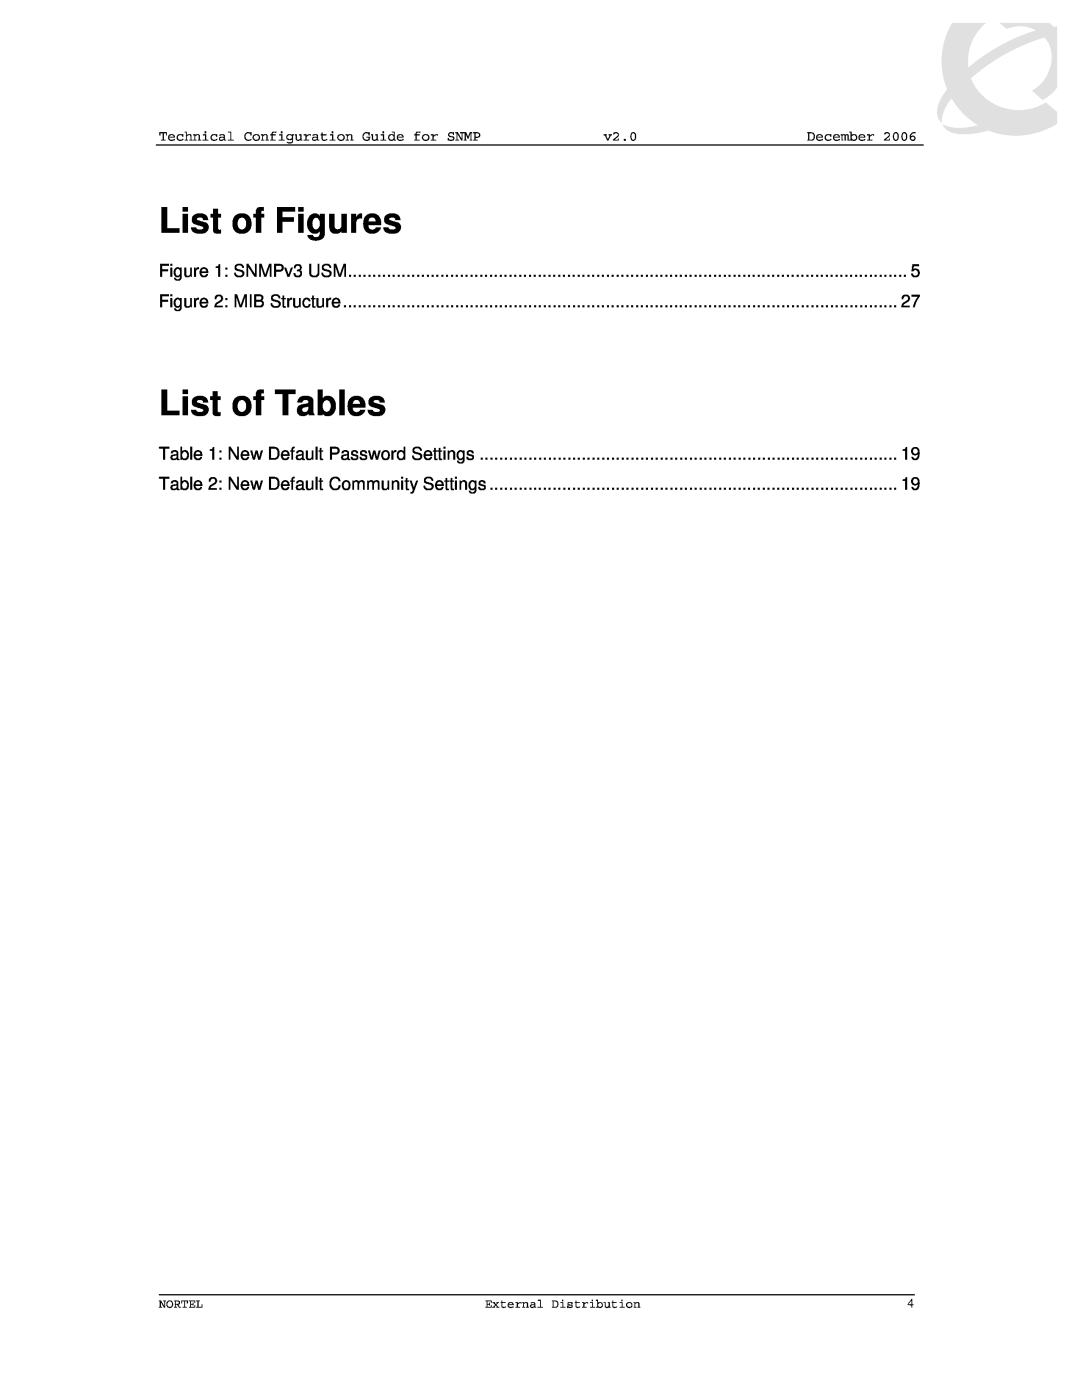 Nortel Networks 8600 manual List of Figures, List of Tables, December, Nortel, External Distribution 